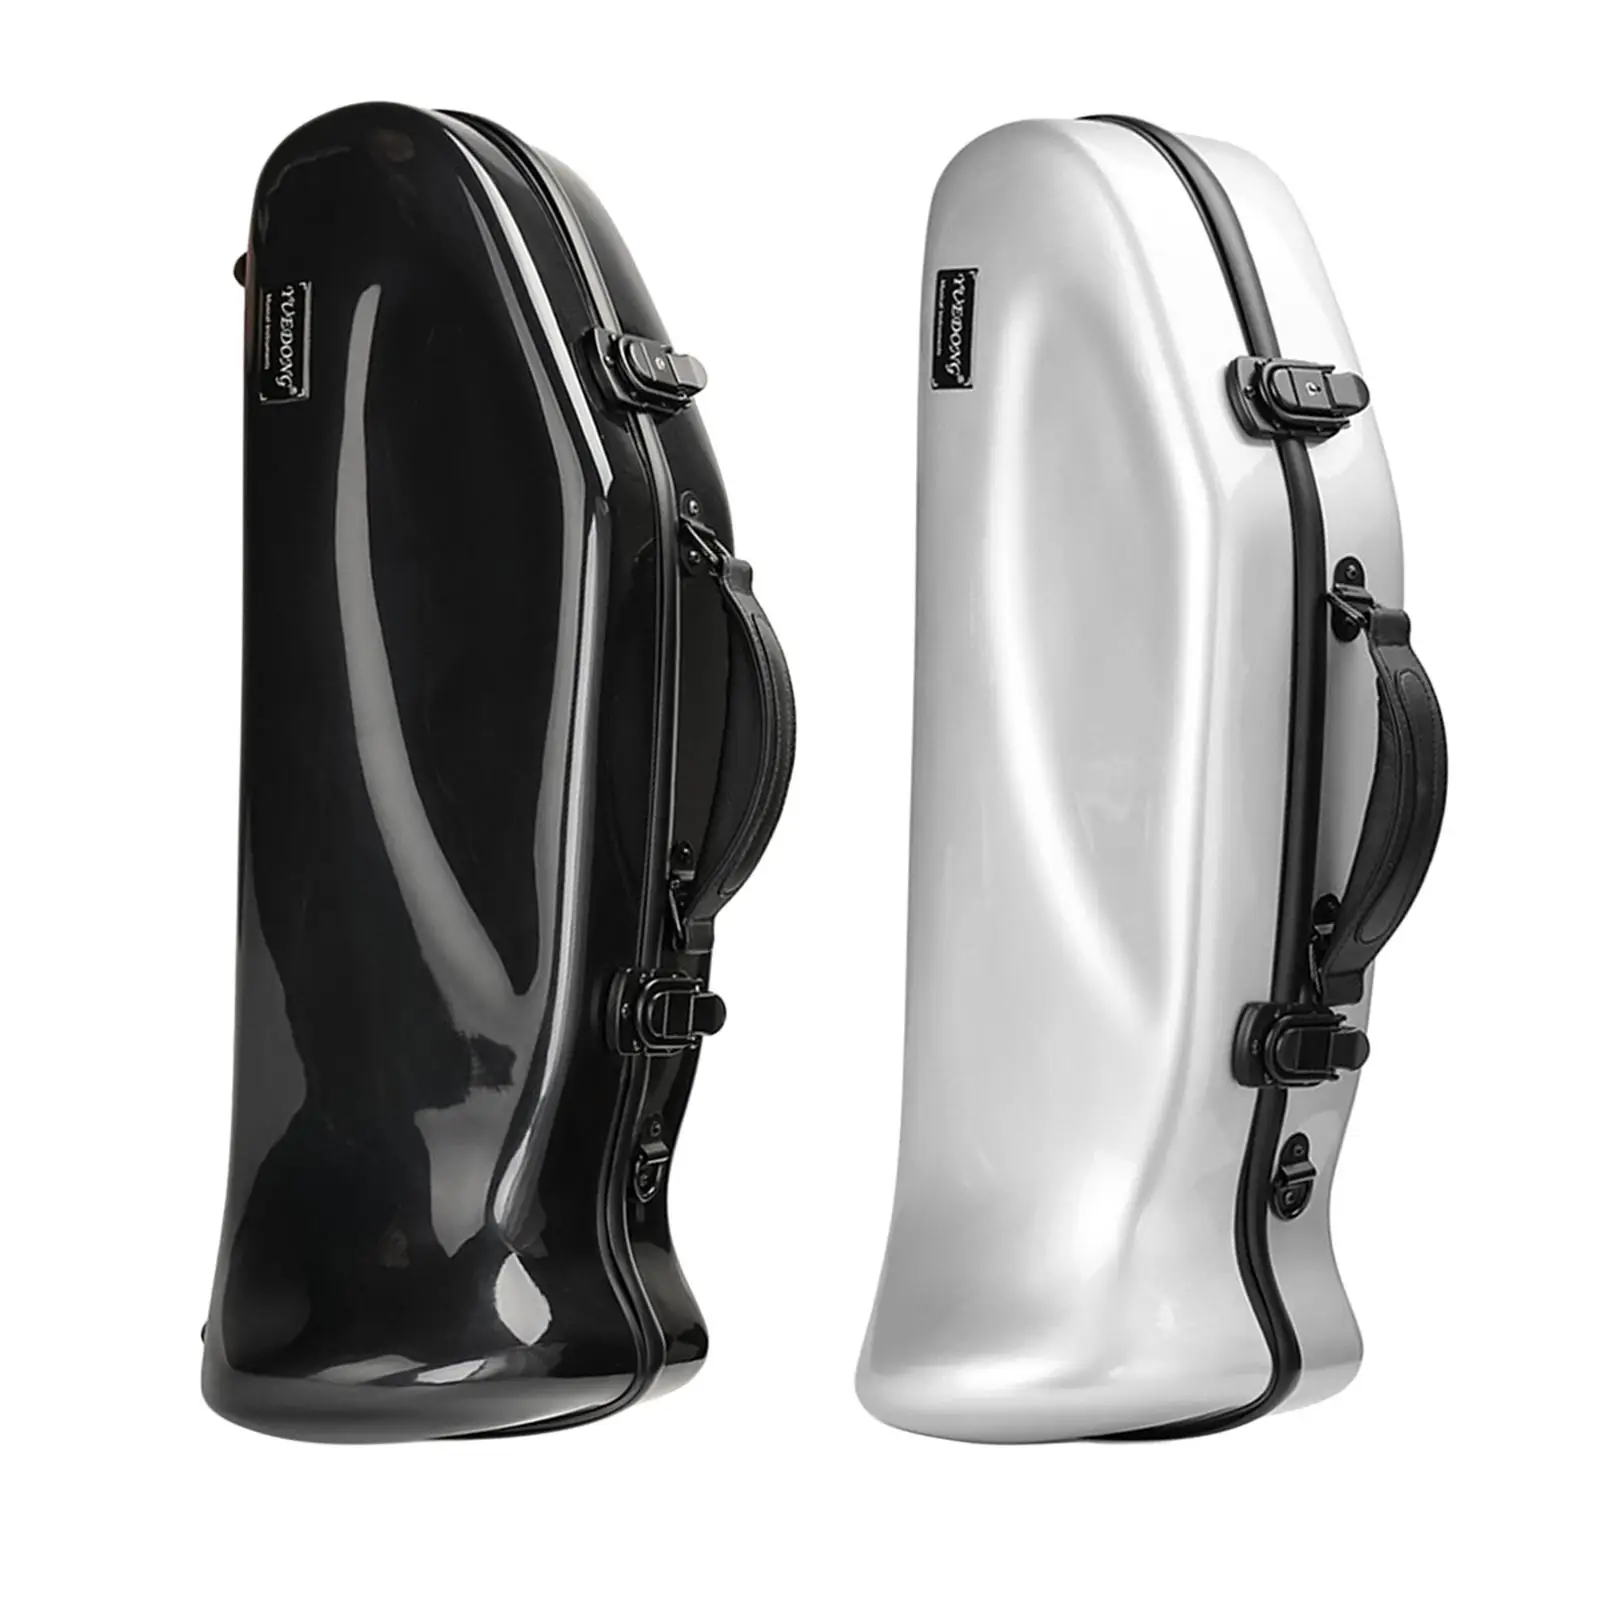 Trumpet Case Frp with Shoulder Strap Accessory Waterproof Shockproof Detachable Trumpet Gig Bag Instrument  Bag